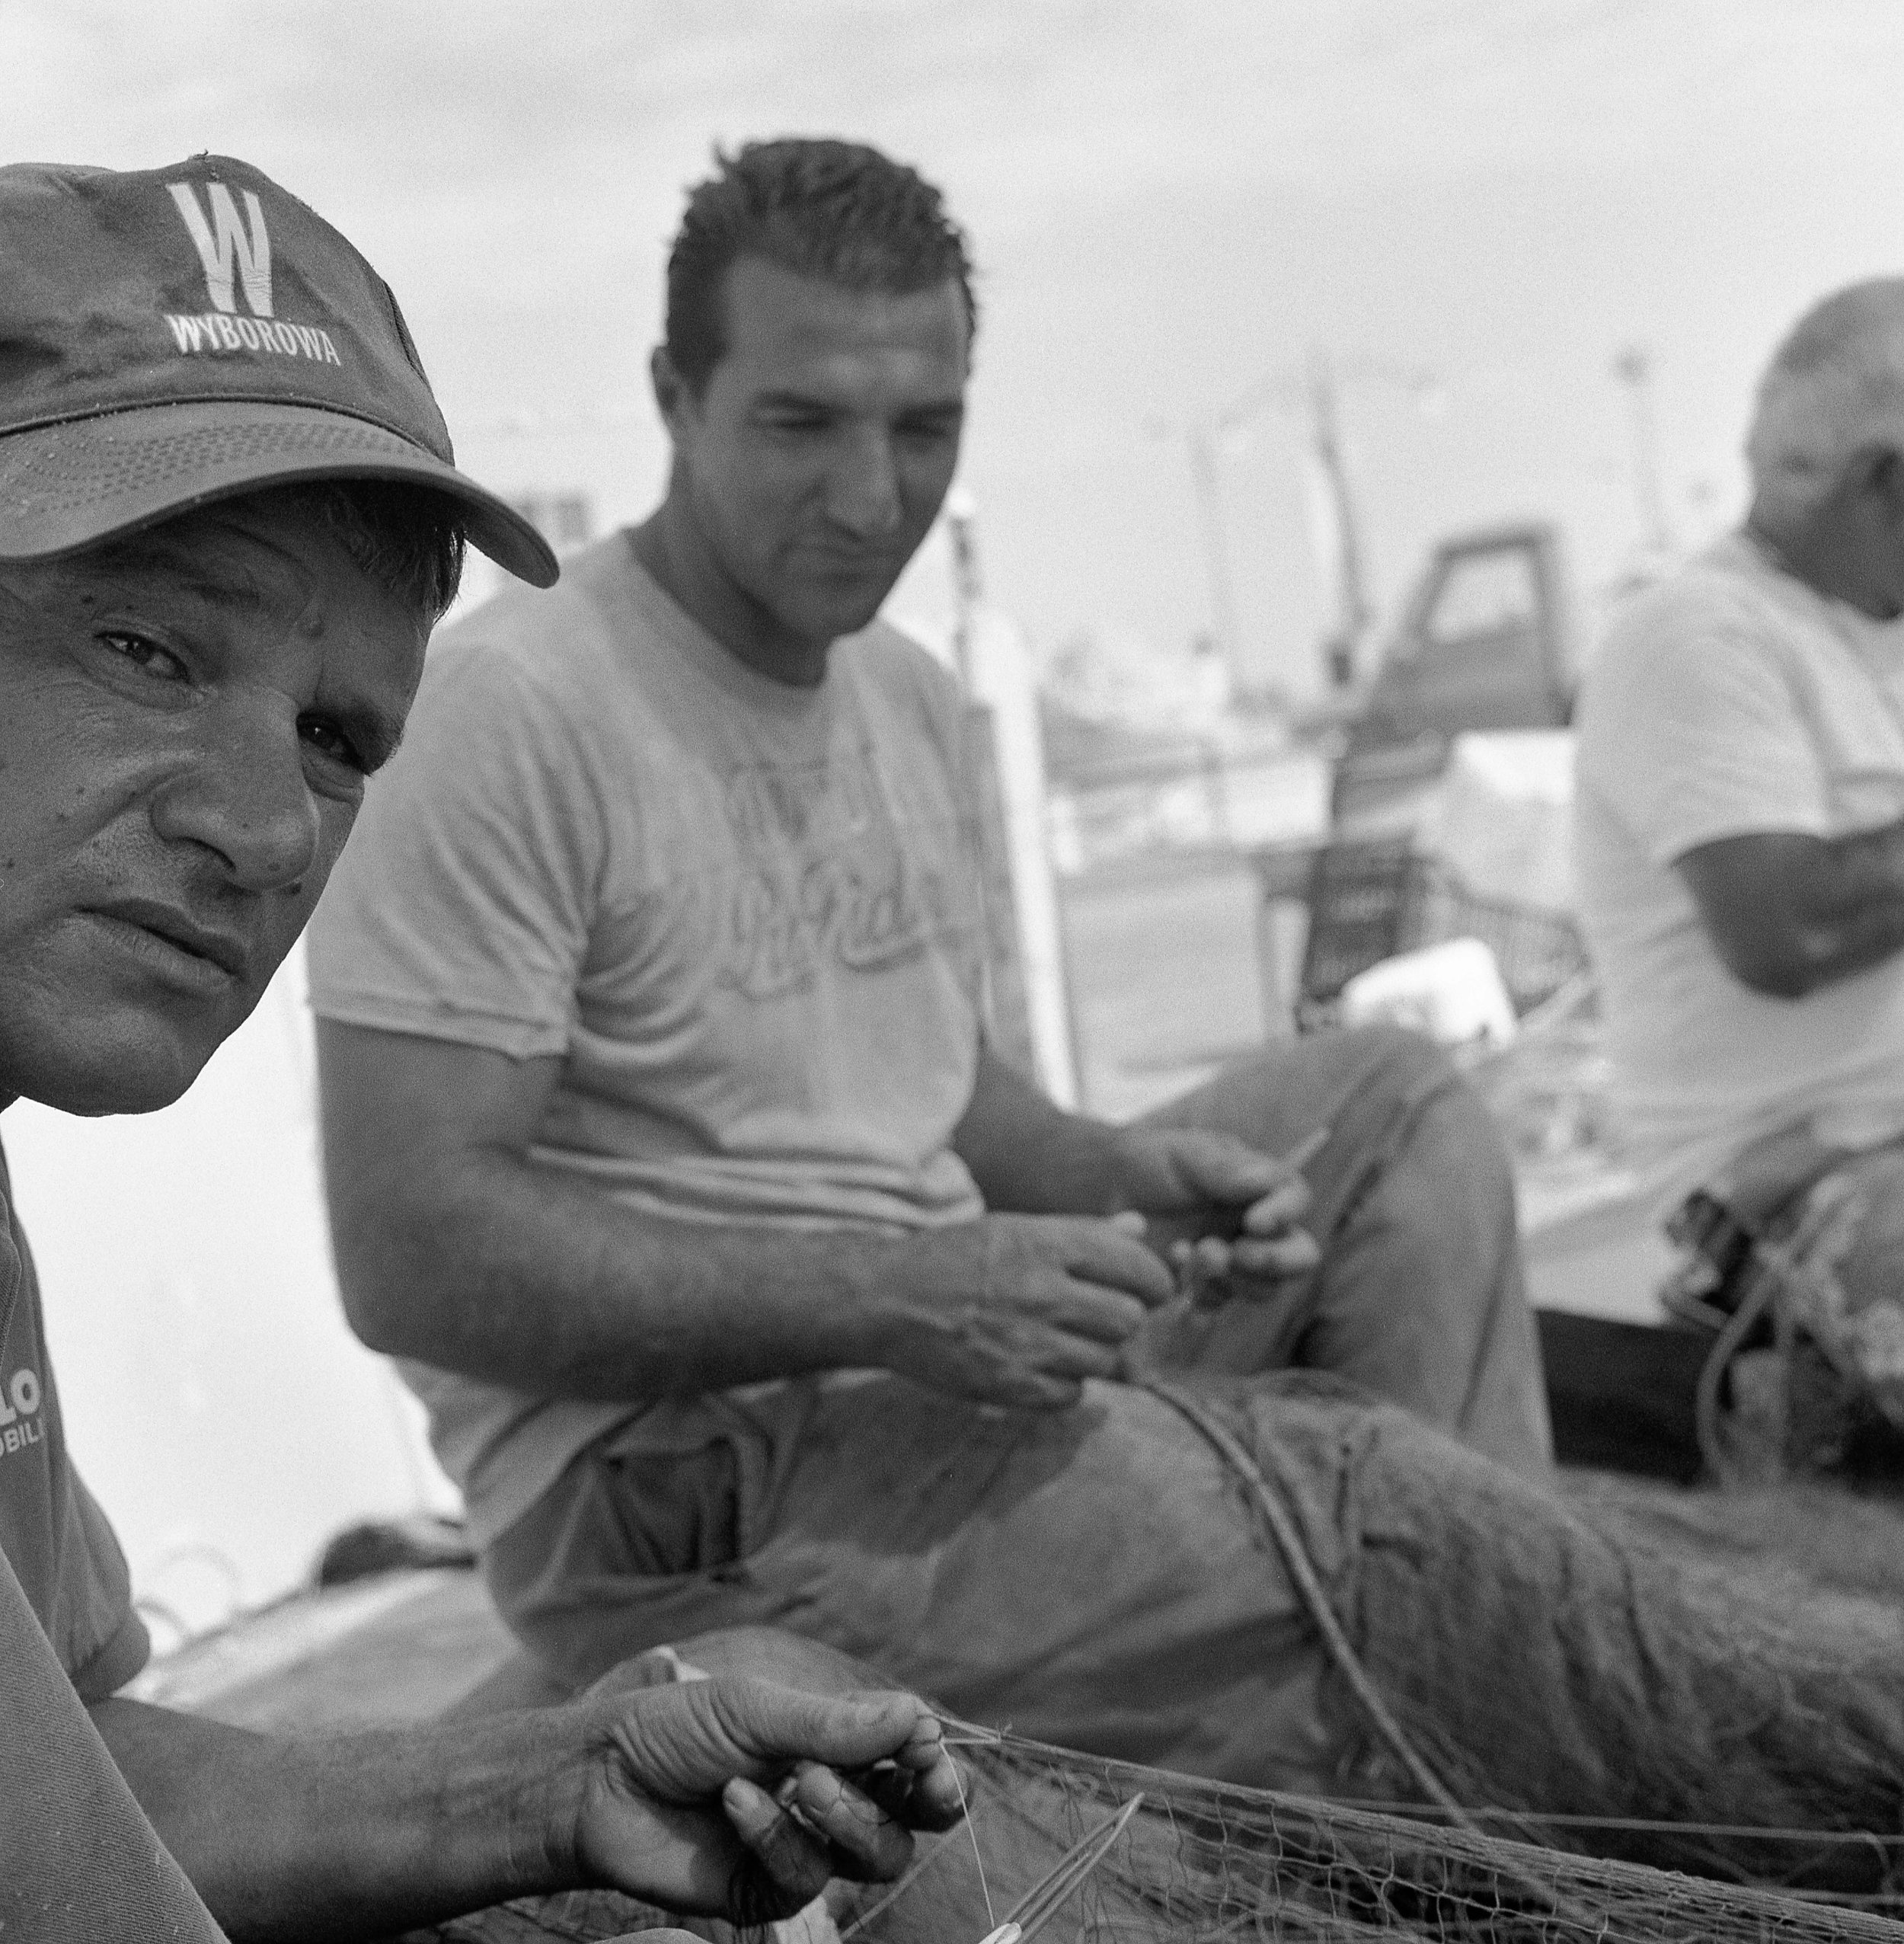 Pescadores. Gallipoli, Italy